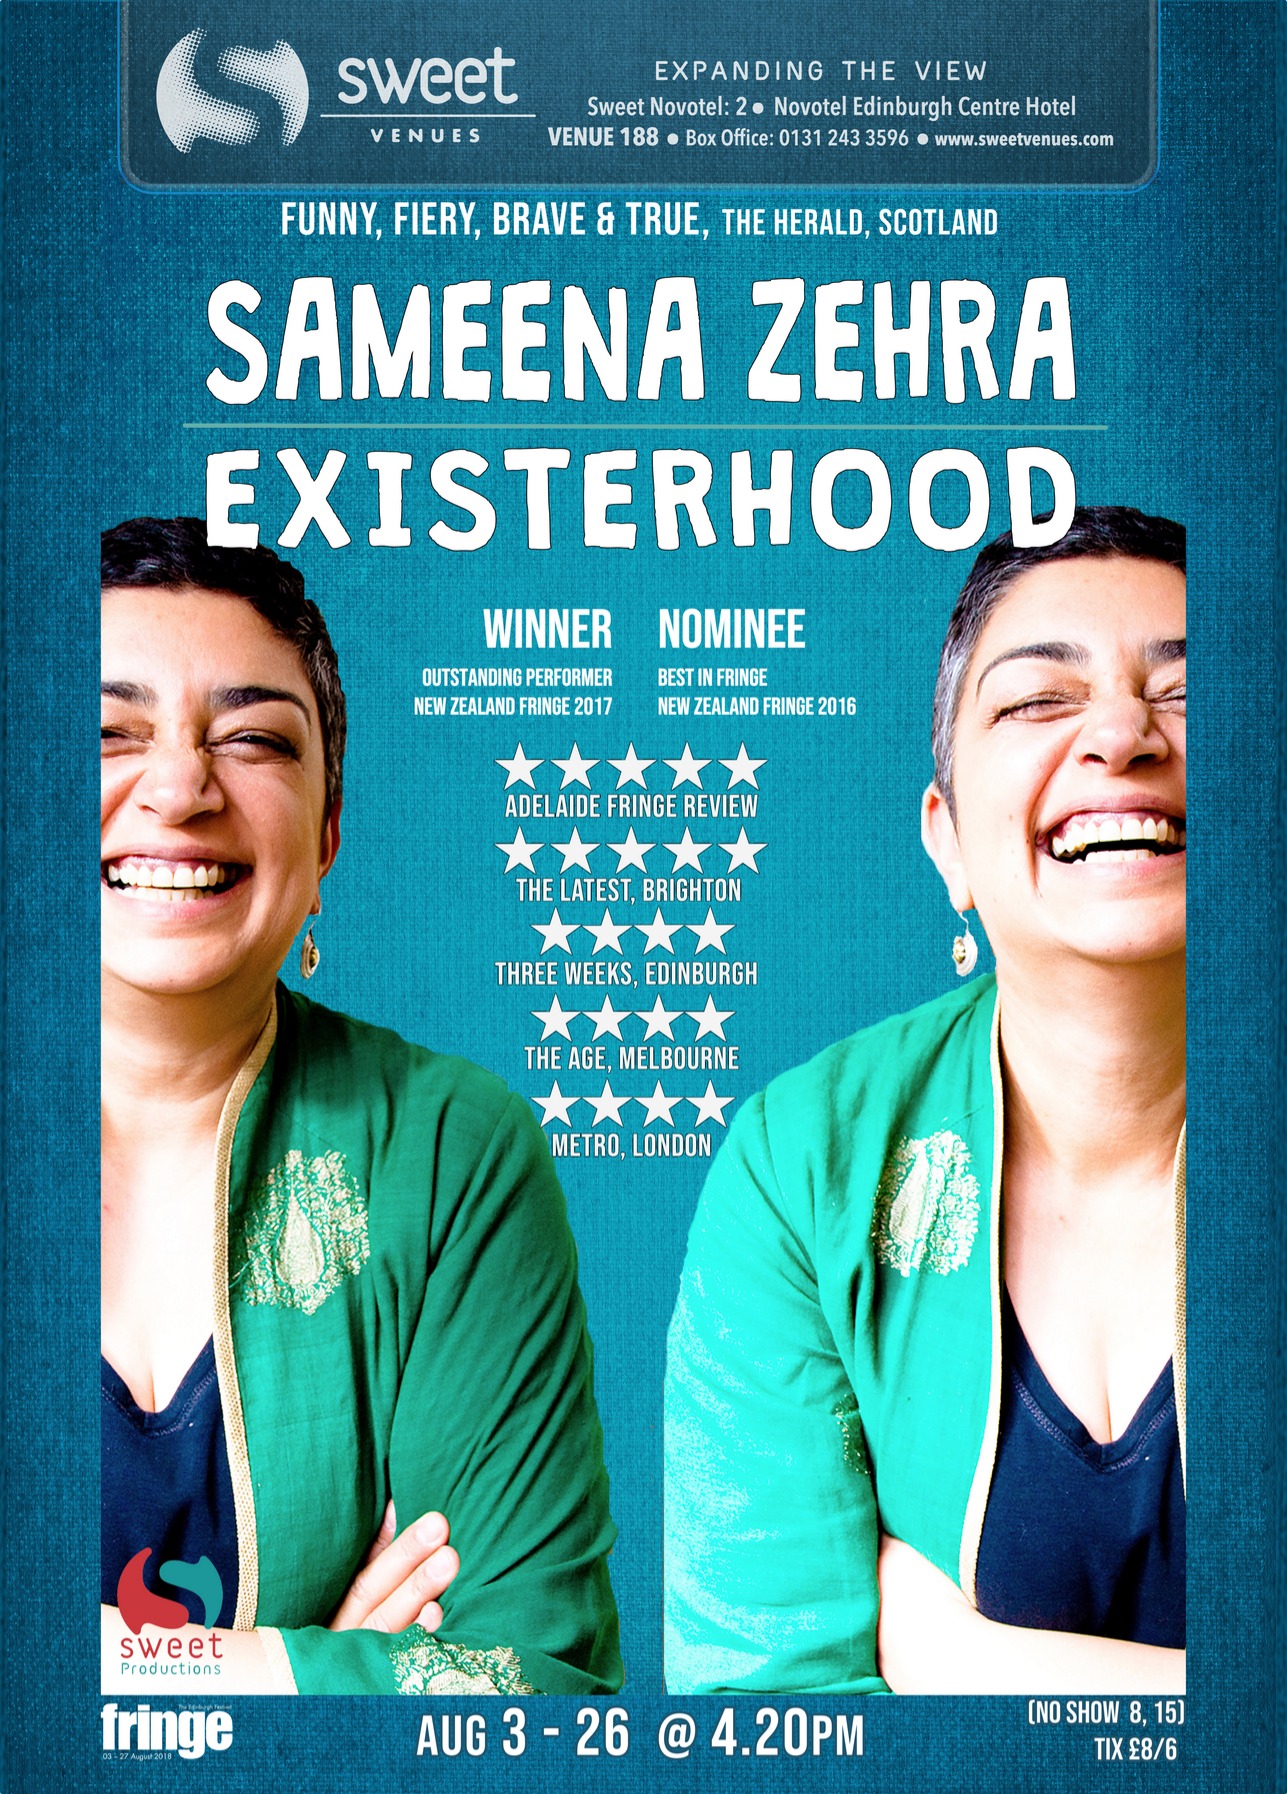 The poster for Sameena Zehra: Existerhood